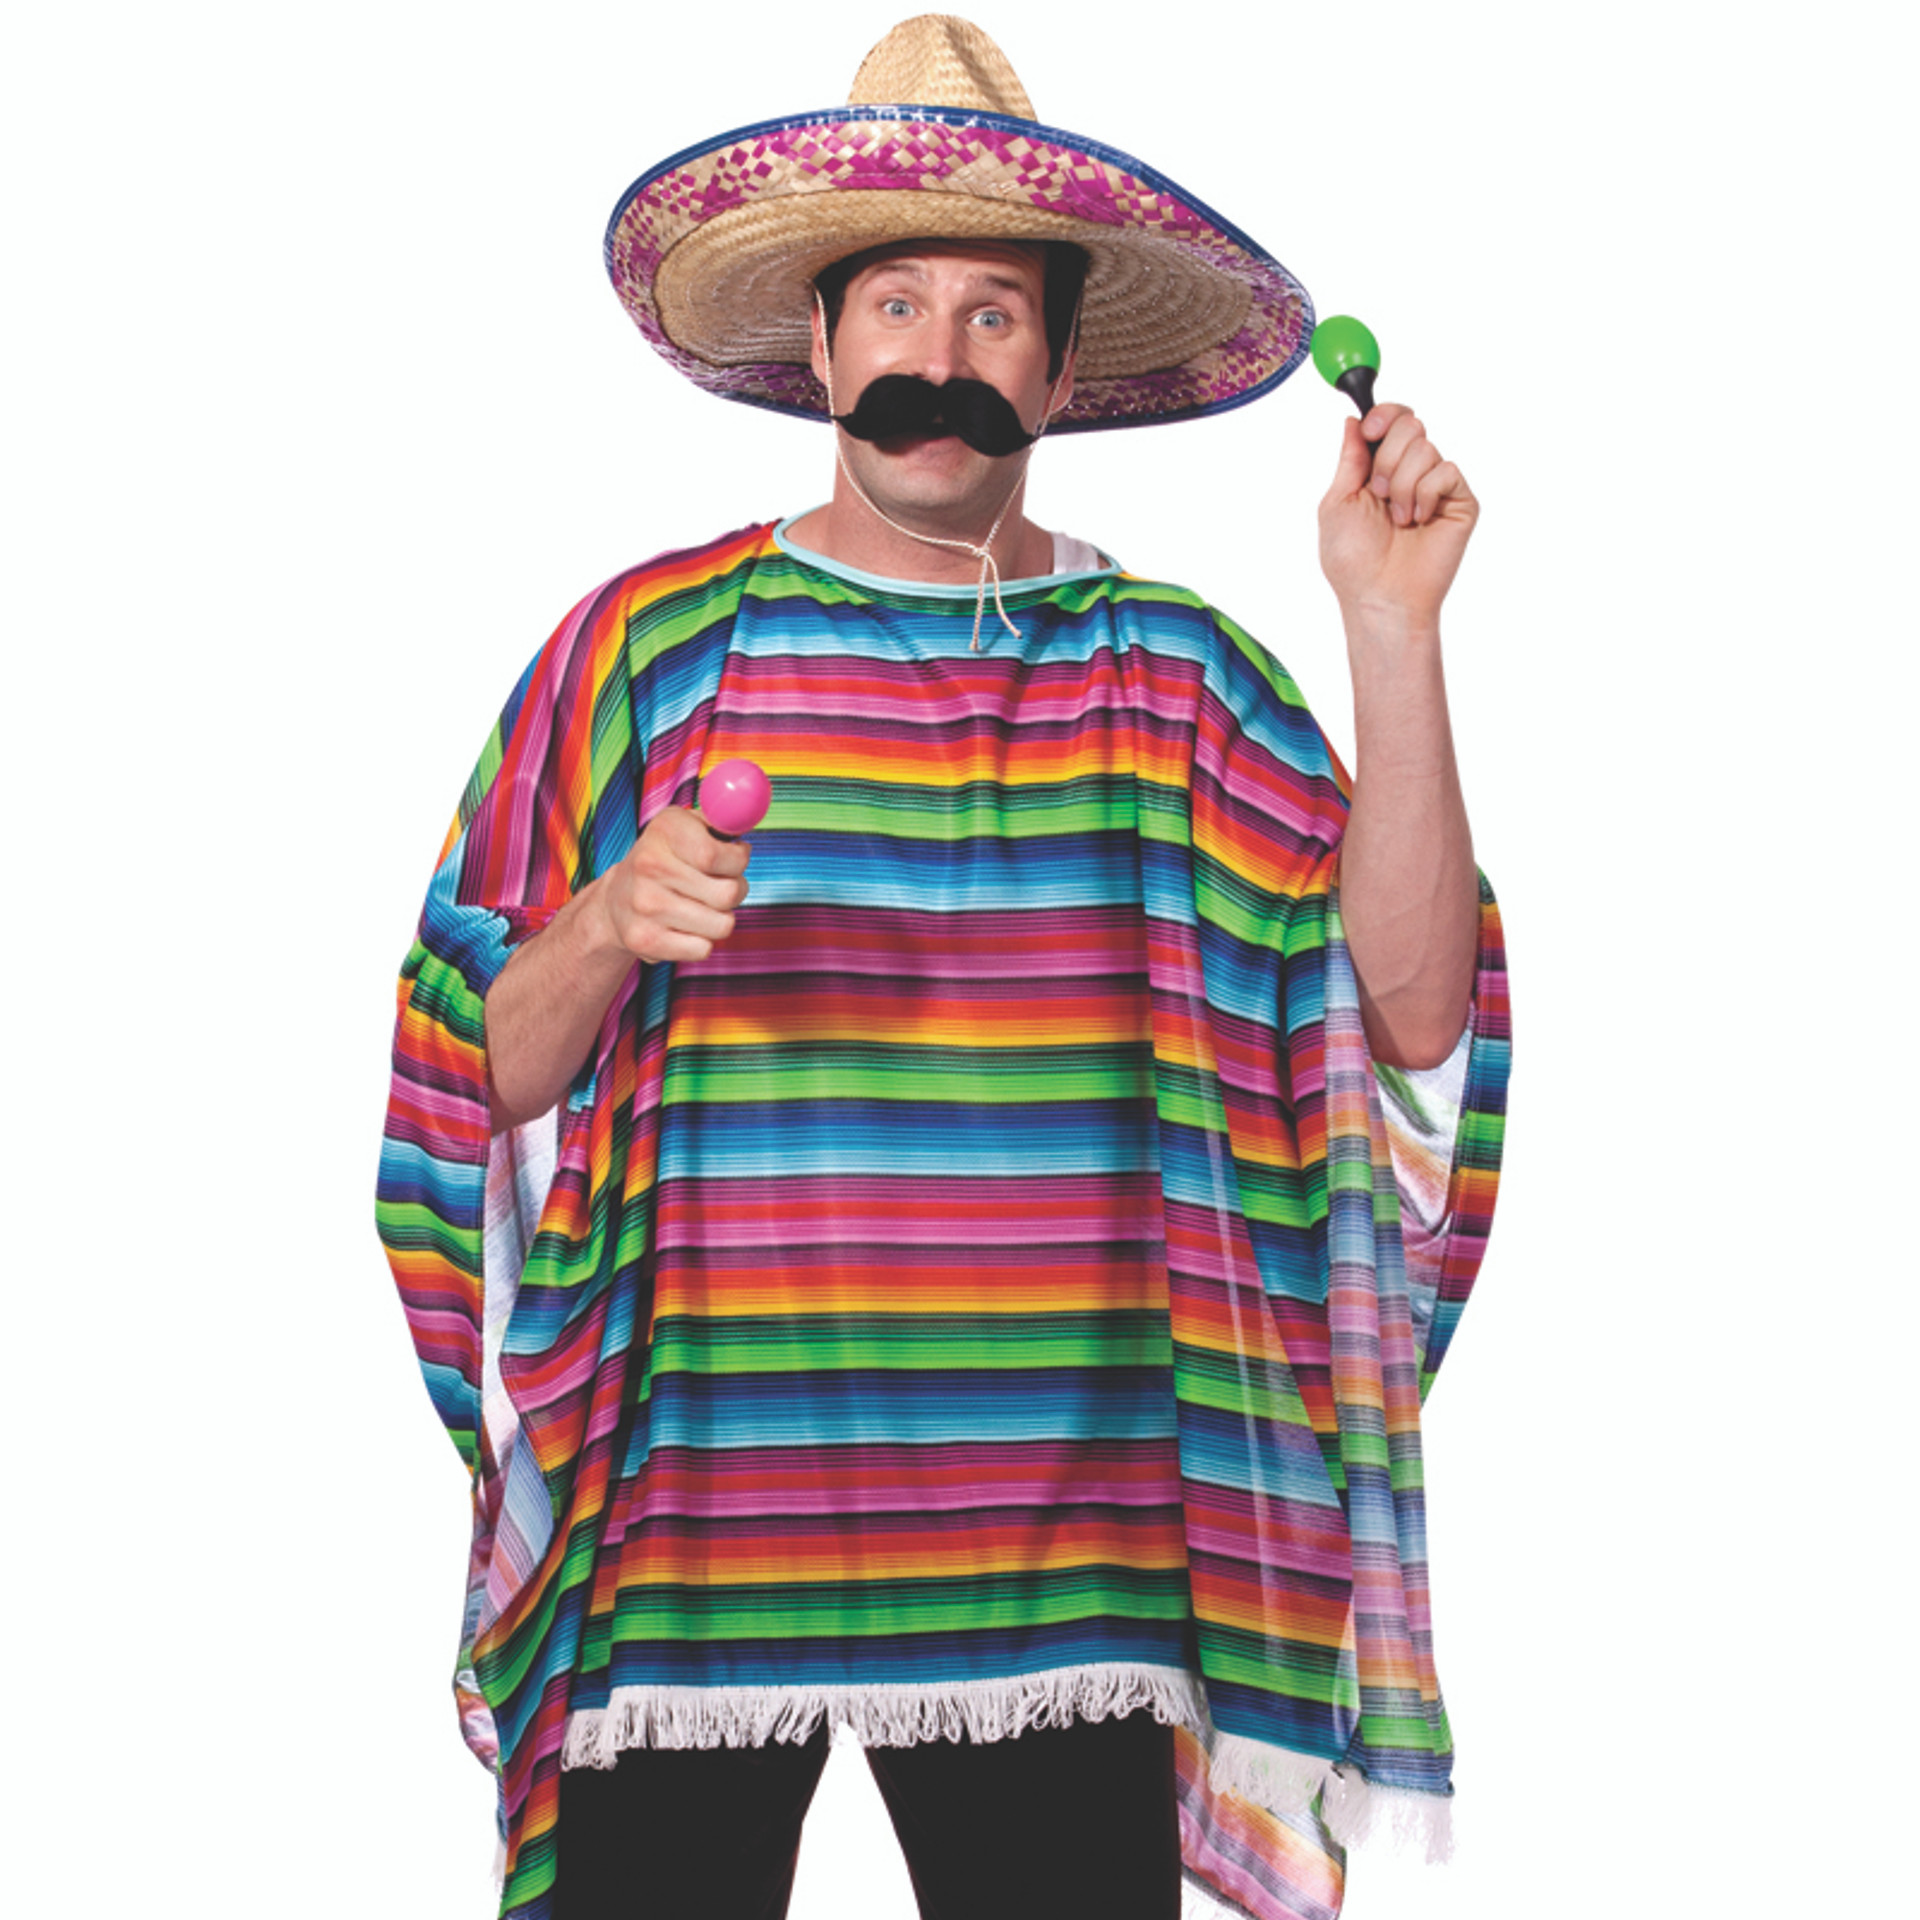 Mexican Pancho Costume Villa Mustache 9040 - Private Island Party